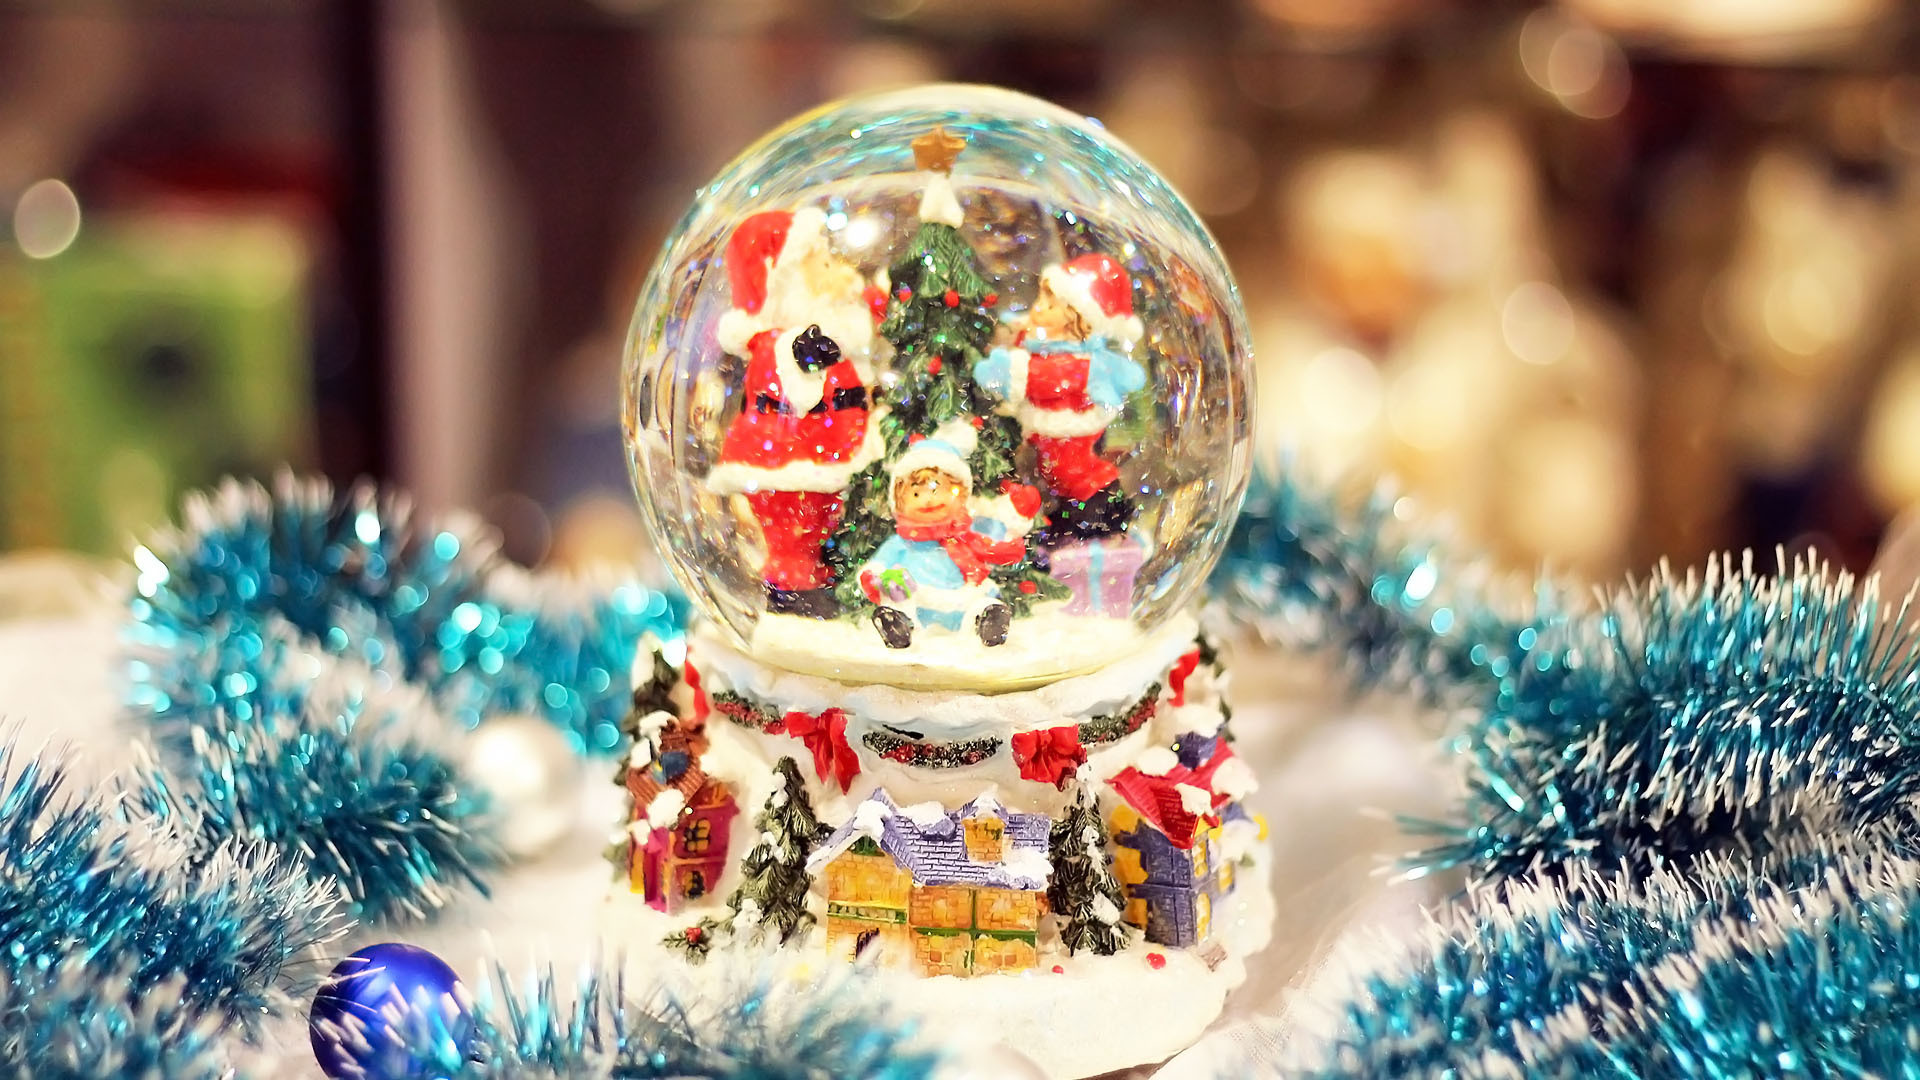 immagini di sfondi natalizi,ornamento di natale,natale,decorazione natalizia,albero di natale,ornamento